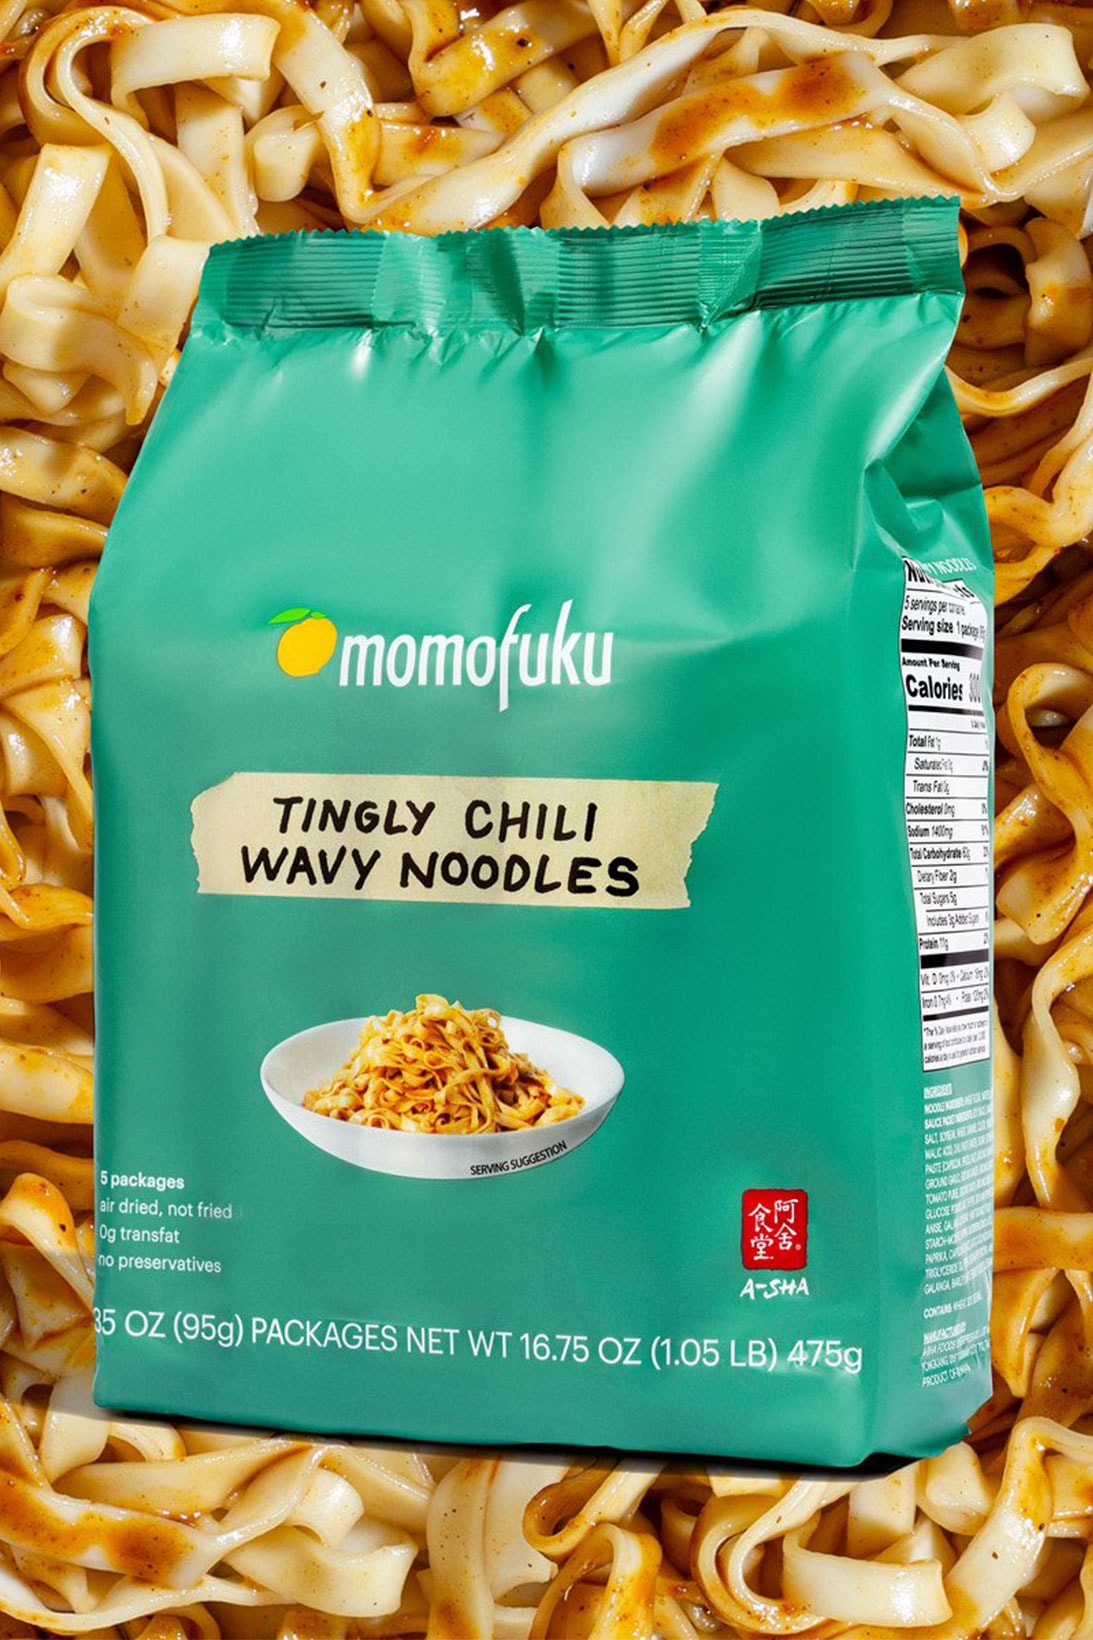 Momofuku Noodles Soy Scallion Chili Wavy Tingly Spicy David Chang Food 